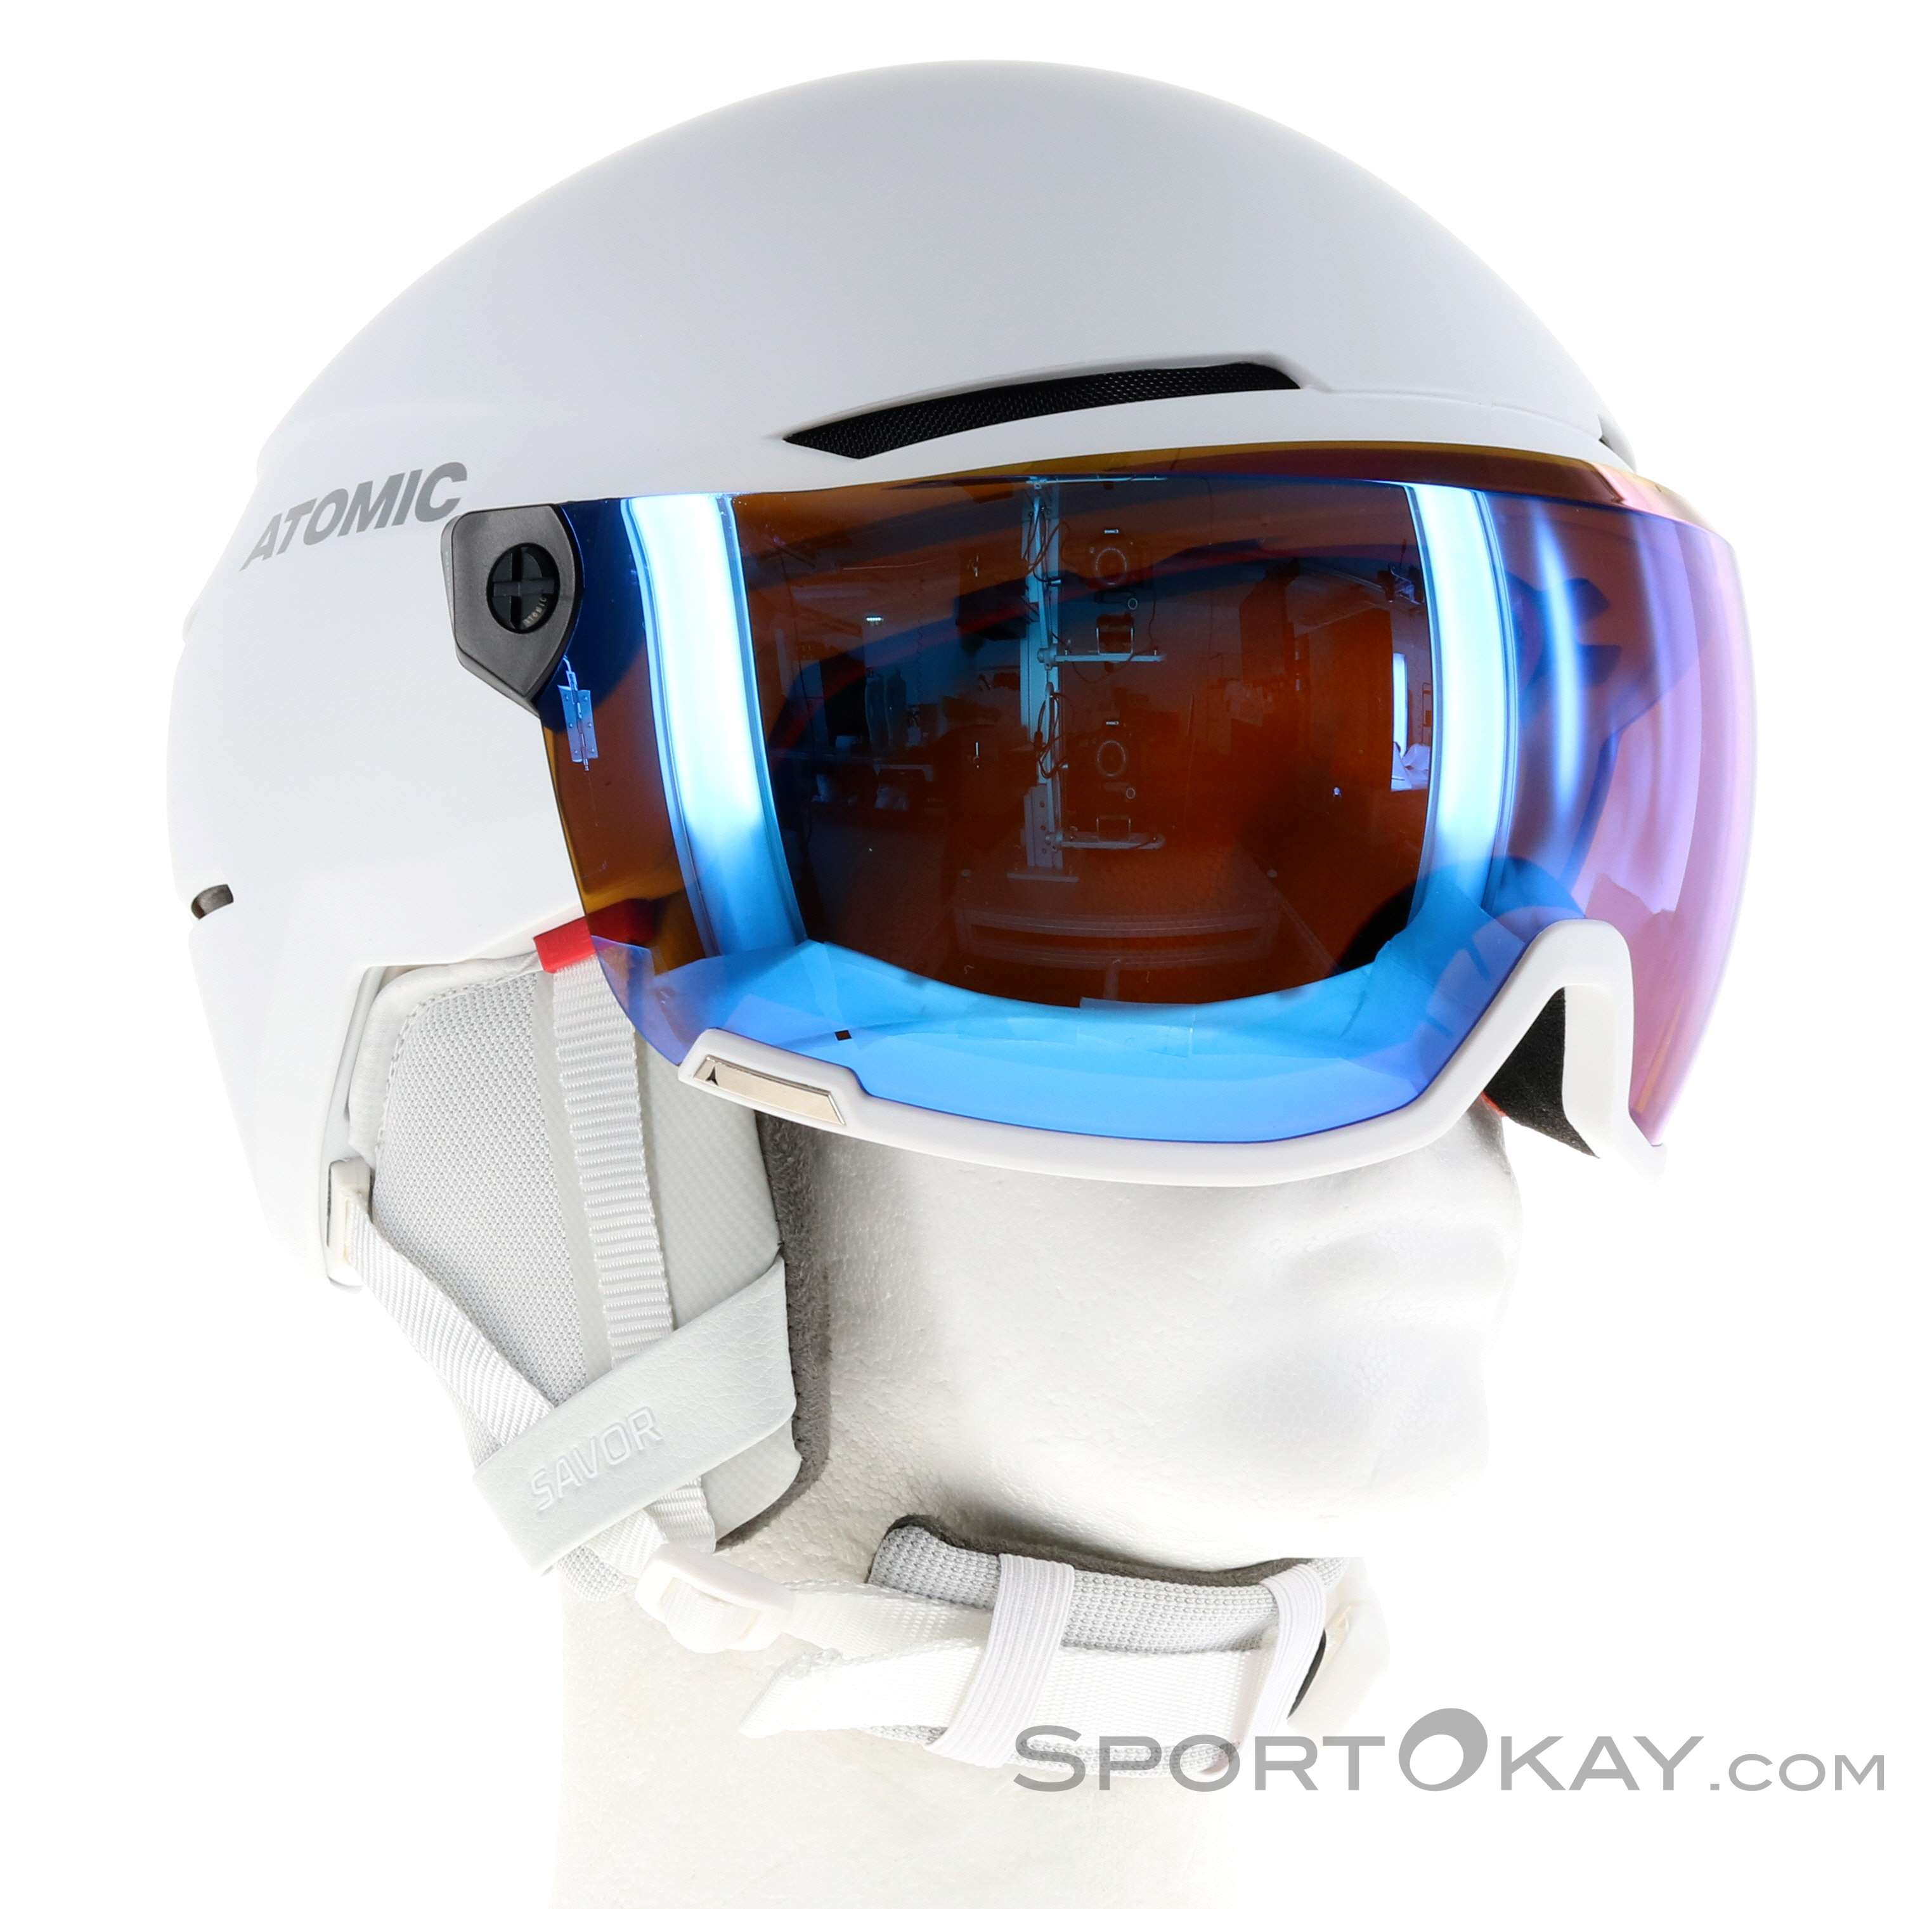 Atomic Savor Visor Stereo Ski Helmet with Visor - Ski Helmets